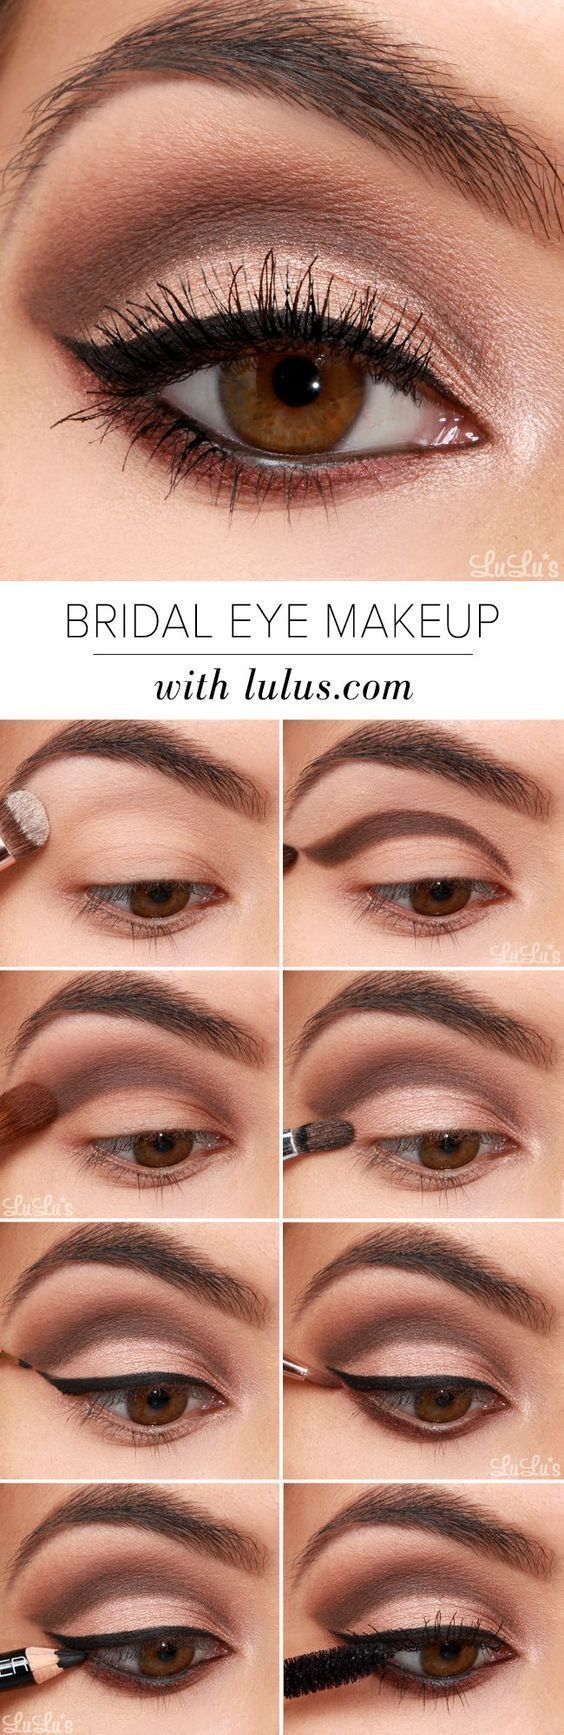 Eye Makeup Tips For Brown Eyes Bridal Eye Makeup Pinterest Makeup Eye